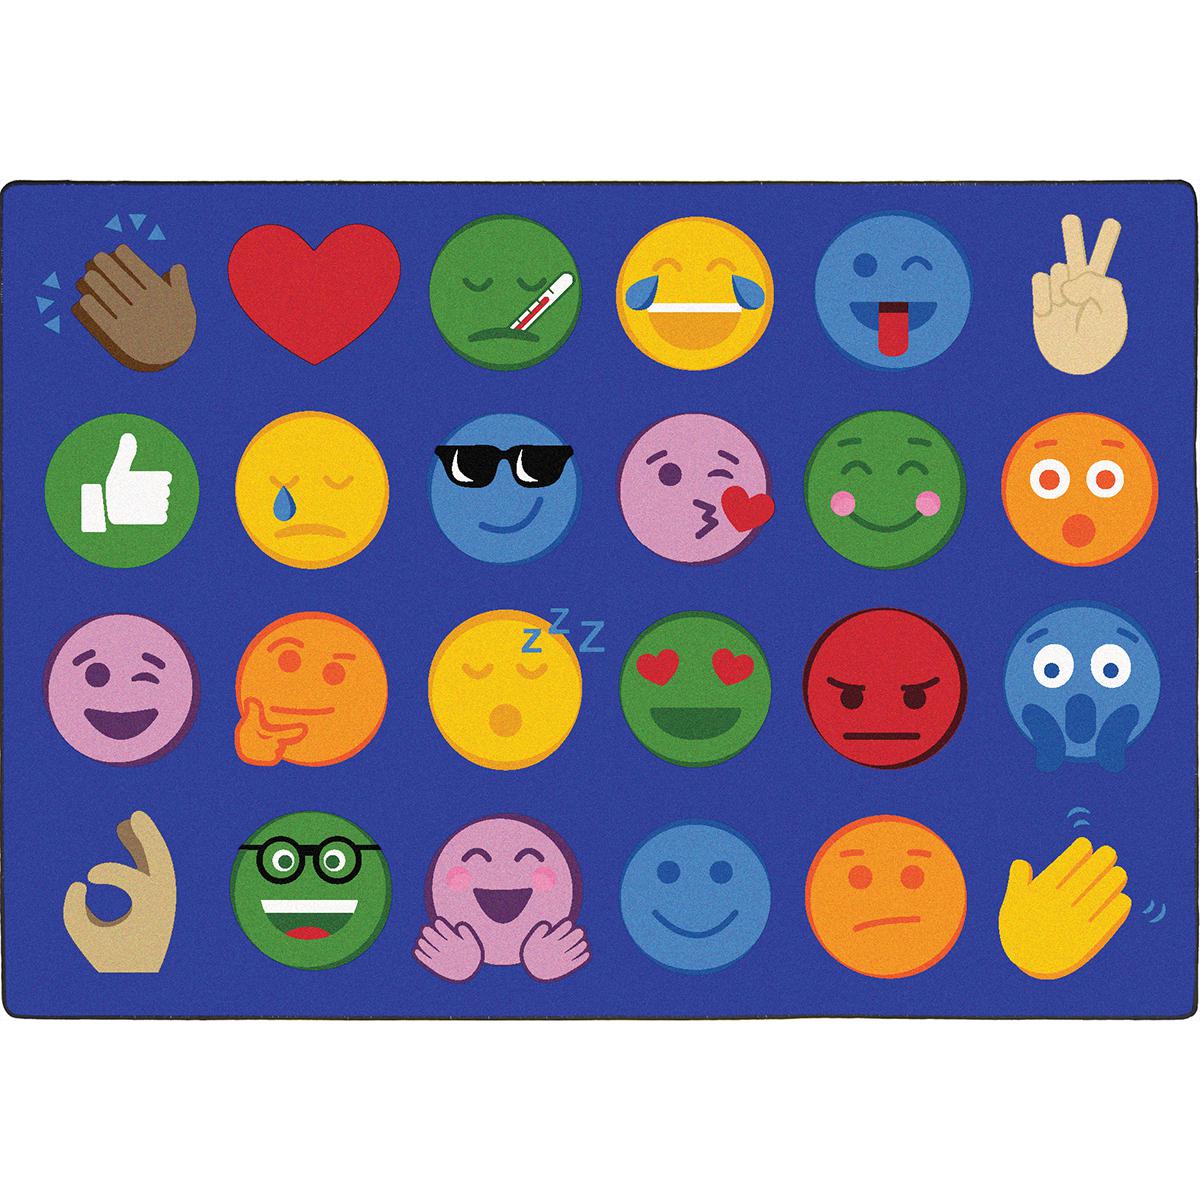  Emoji Expressions Carpet 